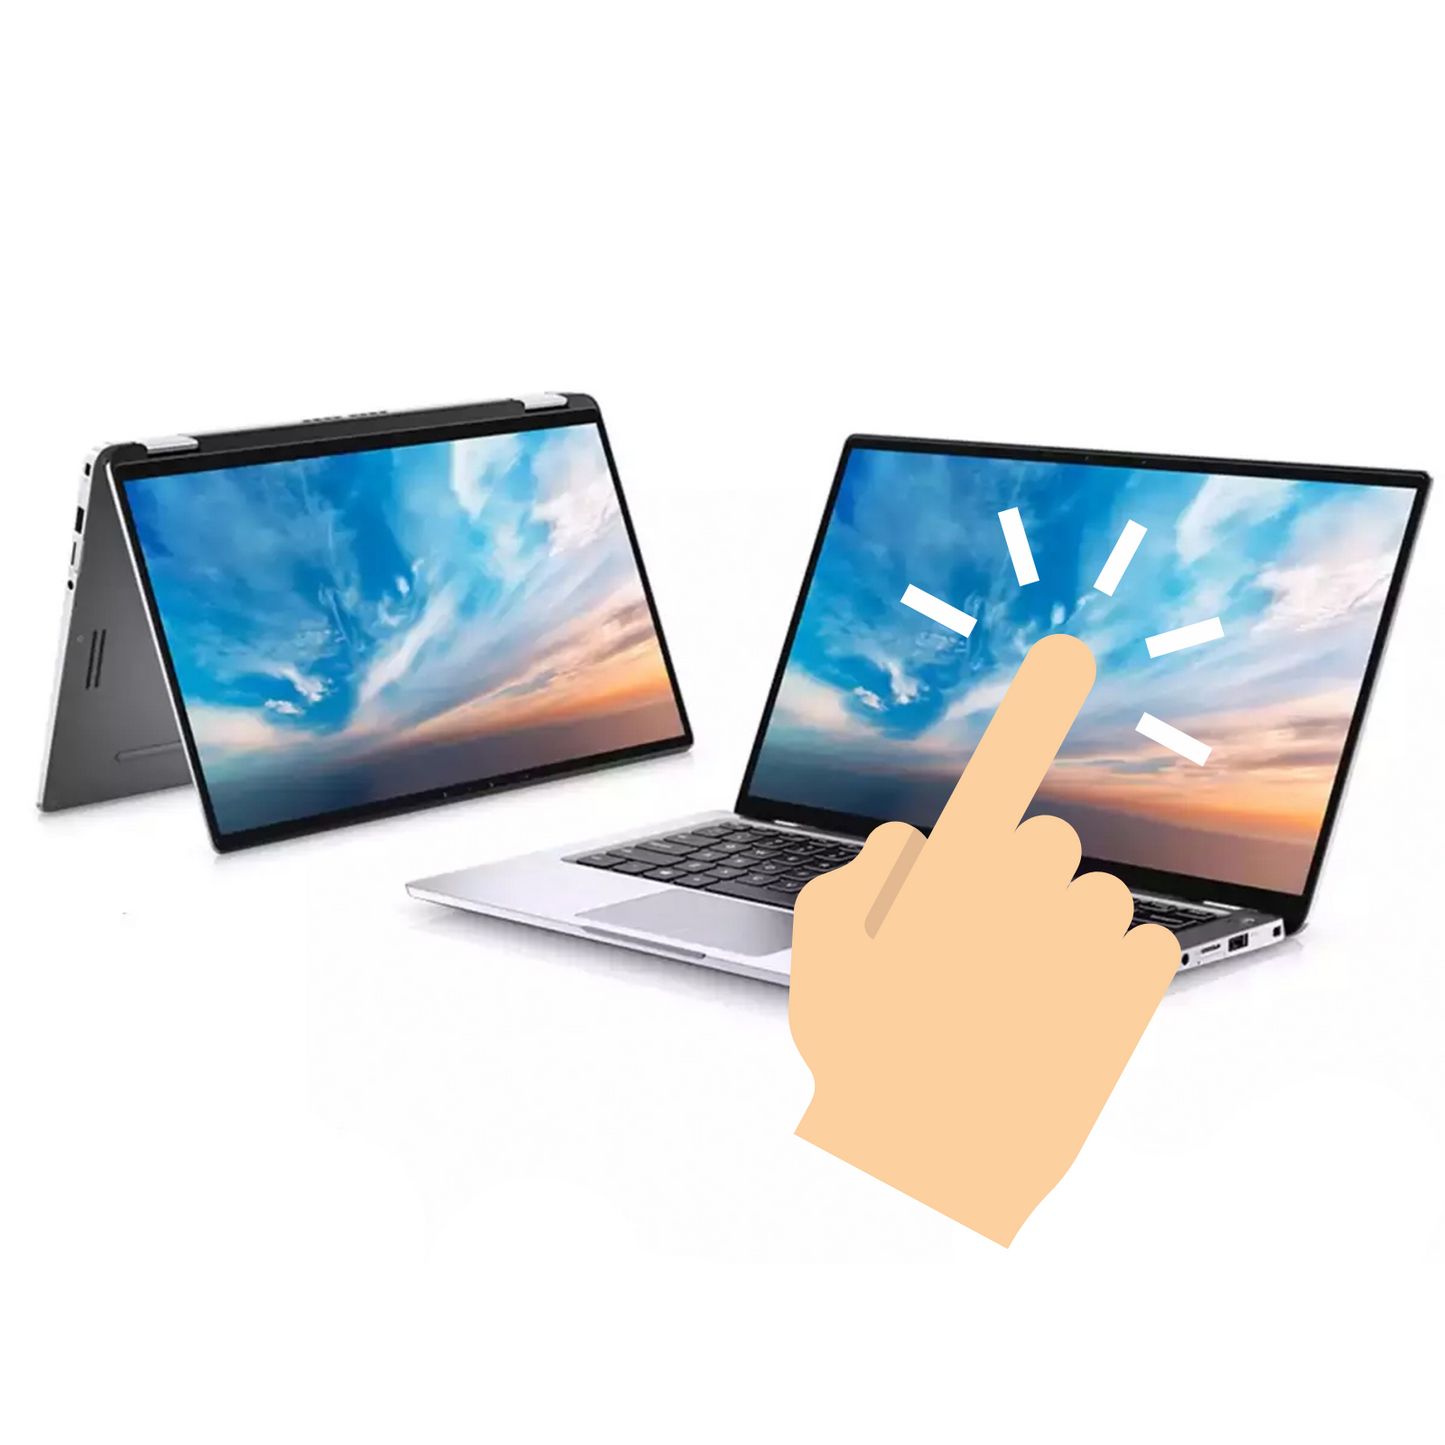 DELL LATITUE 9410 2-IN-1 -14 Inch Touch Screen Laptop - Intel Core I5 Gen 10  - 16 GB - Intel UHD graphics 620 - Windows 11 Original